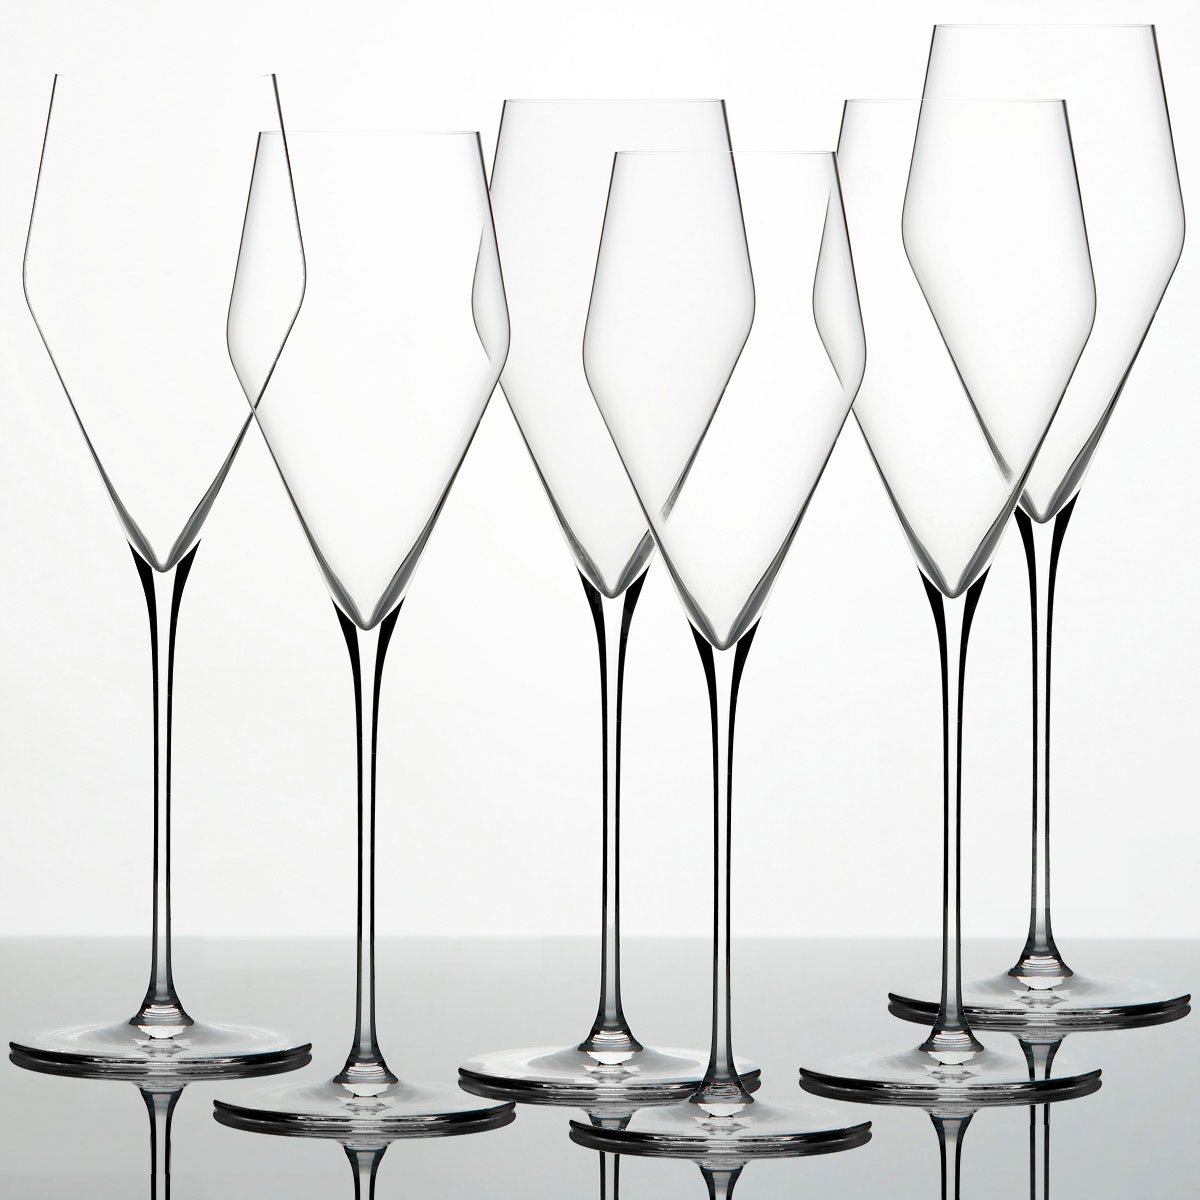 Zalto Denk'Art Champagner Glas 6-er Set im Geschenkkarton